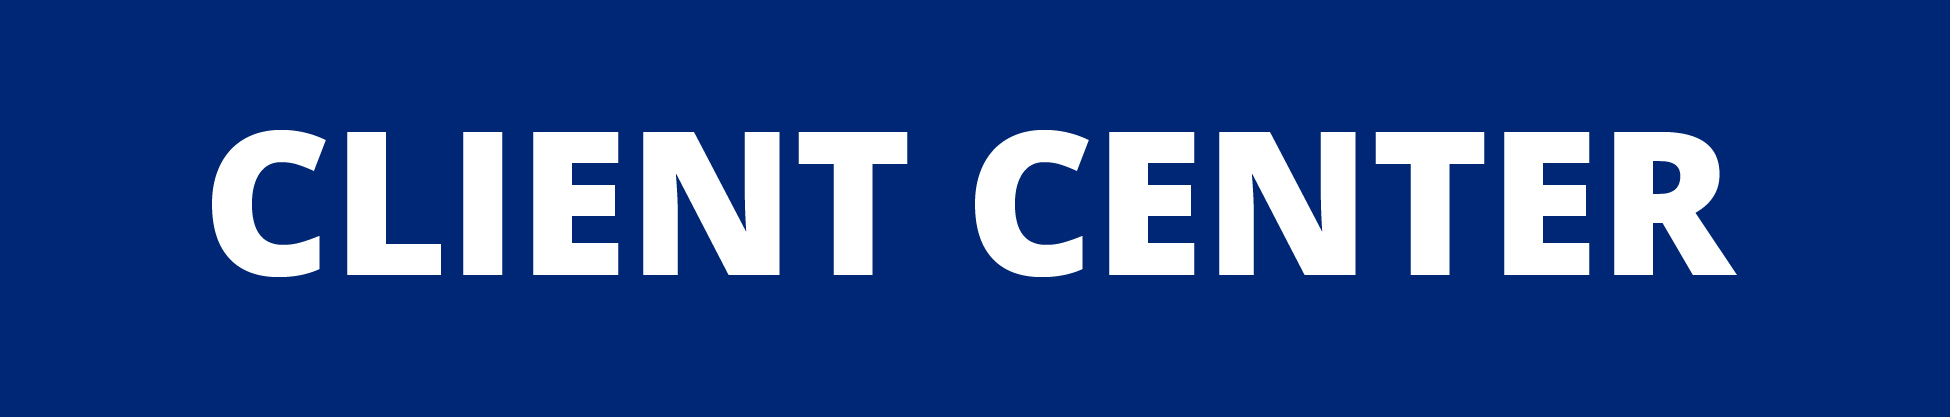 Client Center Button